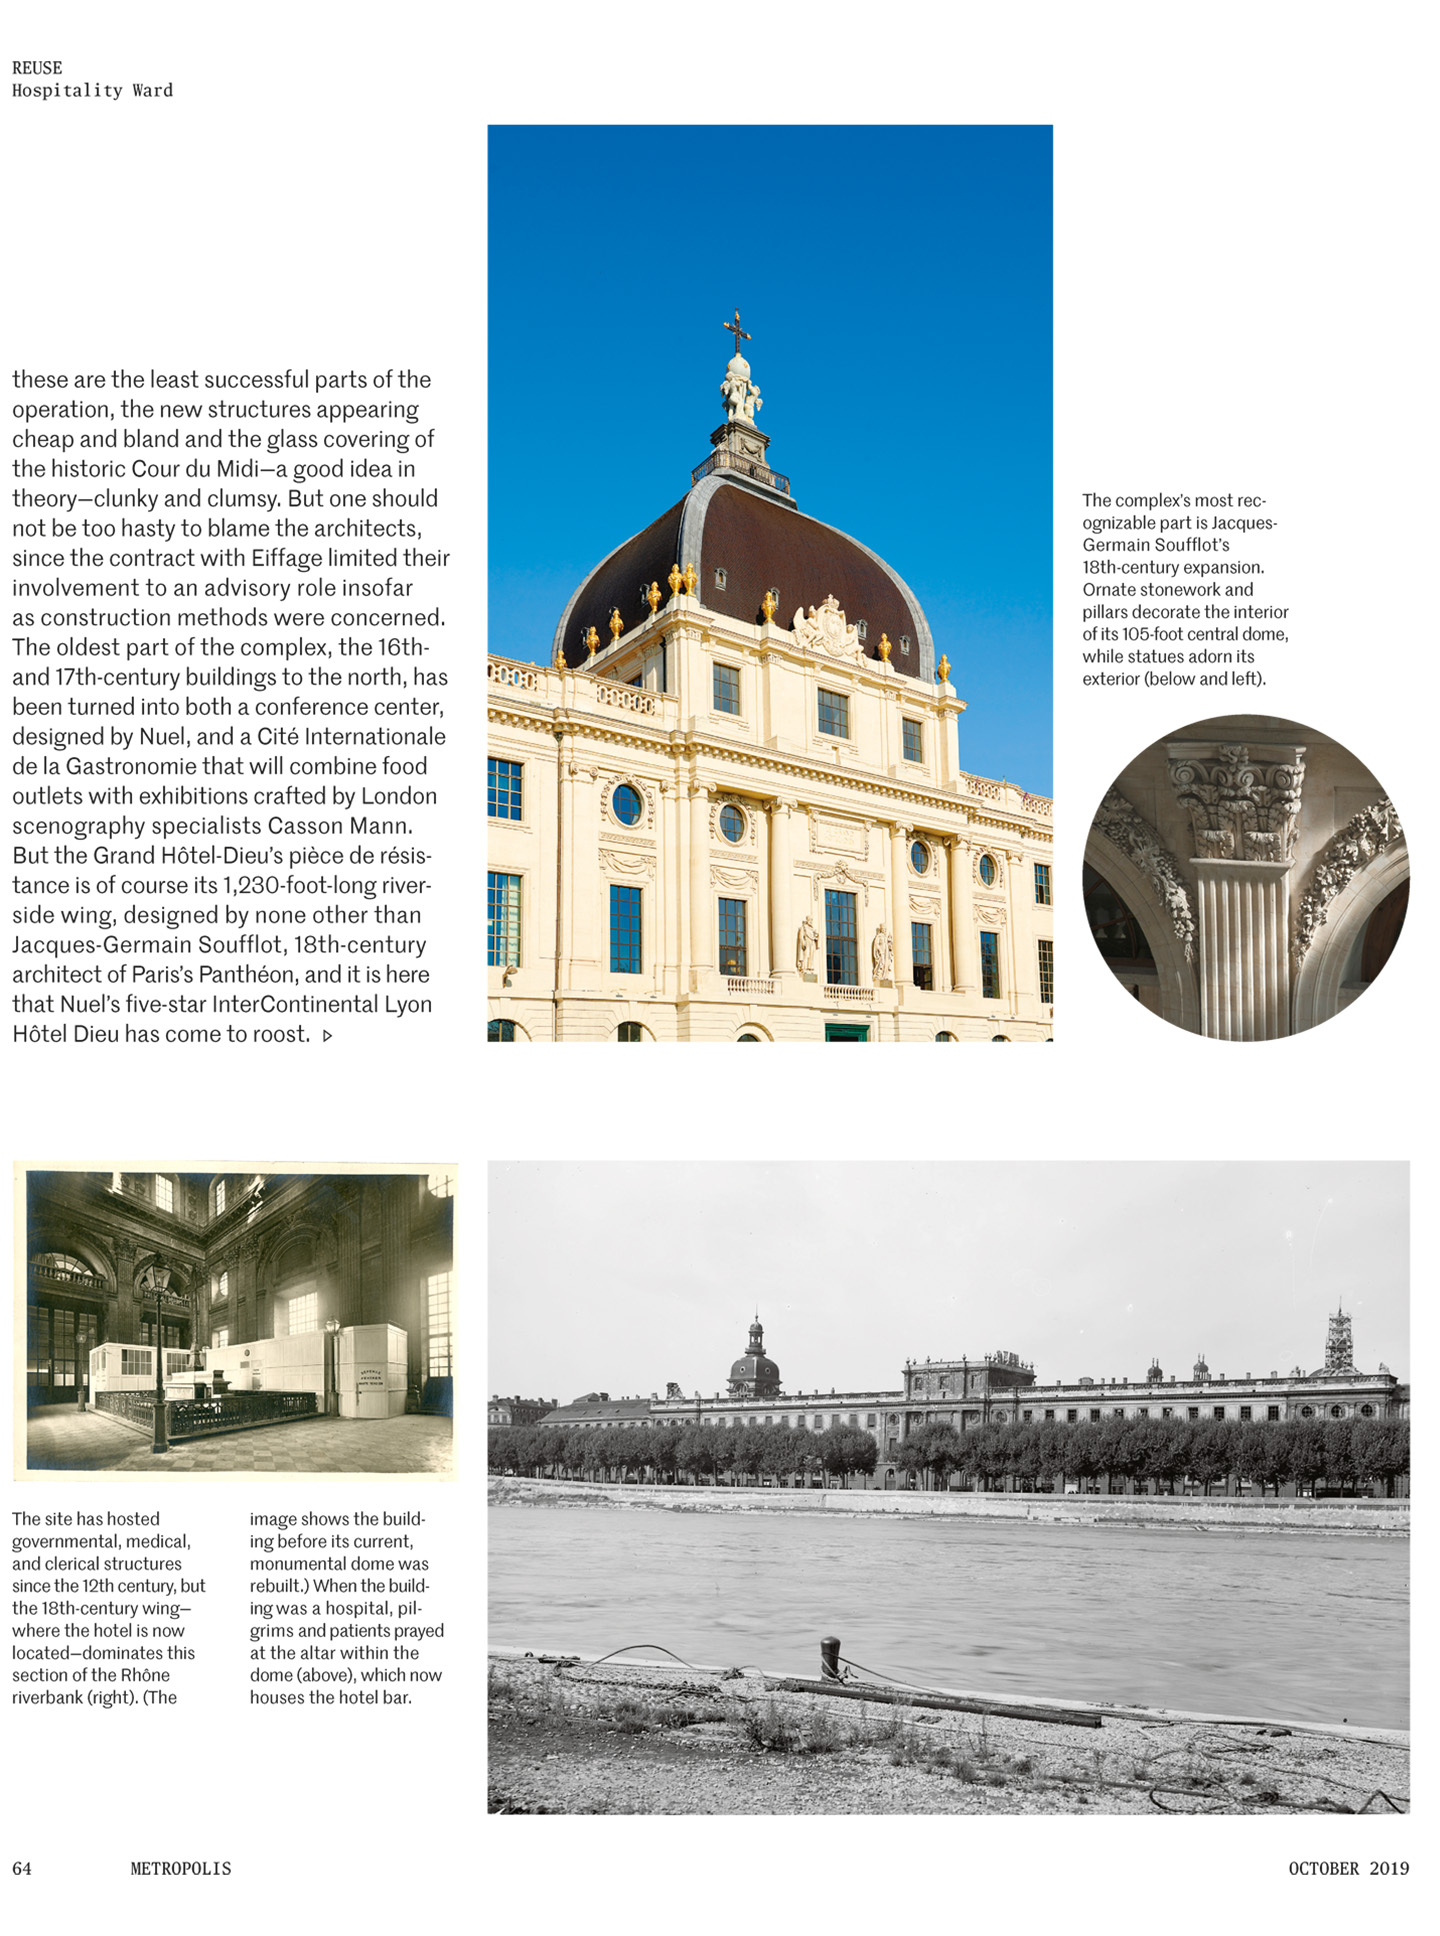 Article sur l'InterContinental Lyon Hotel Dieu réalisé par le studio jean-Philippe Nuel dans le magazine Metropolis, nouvel hotel de luxe, architecture d'intérieur de luxe, patrimoine historique